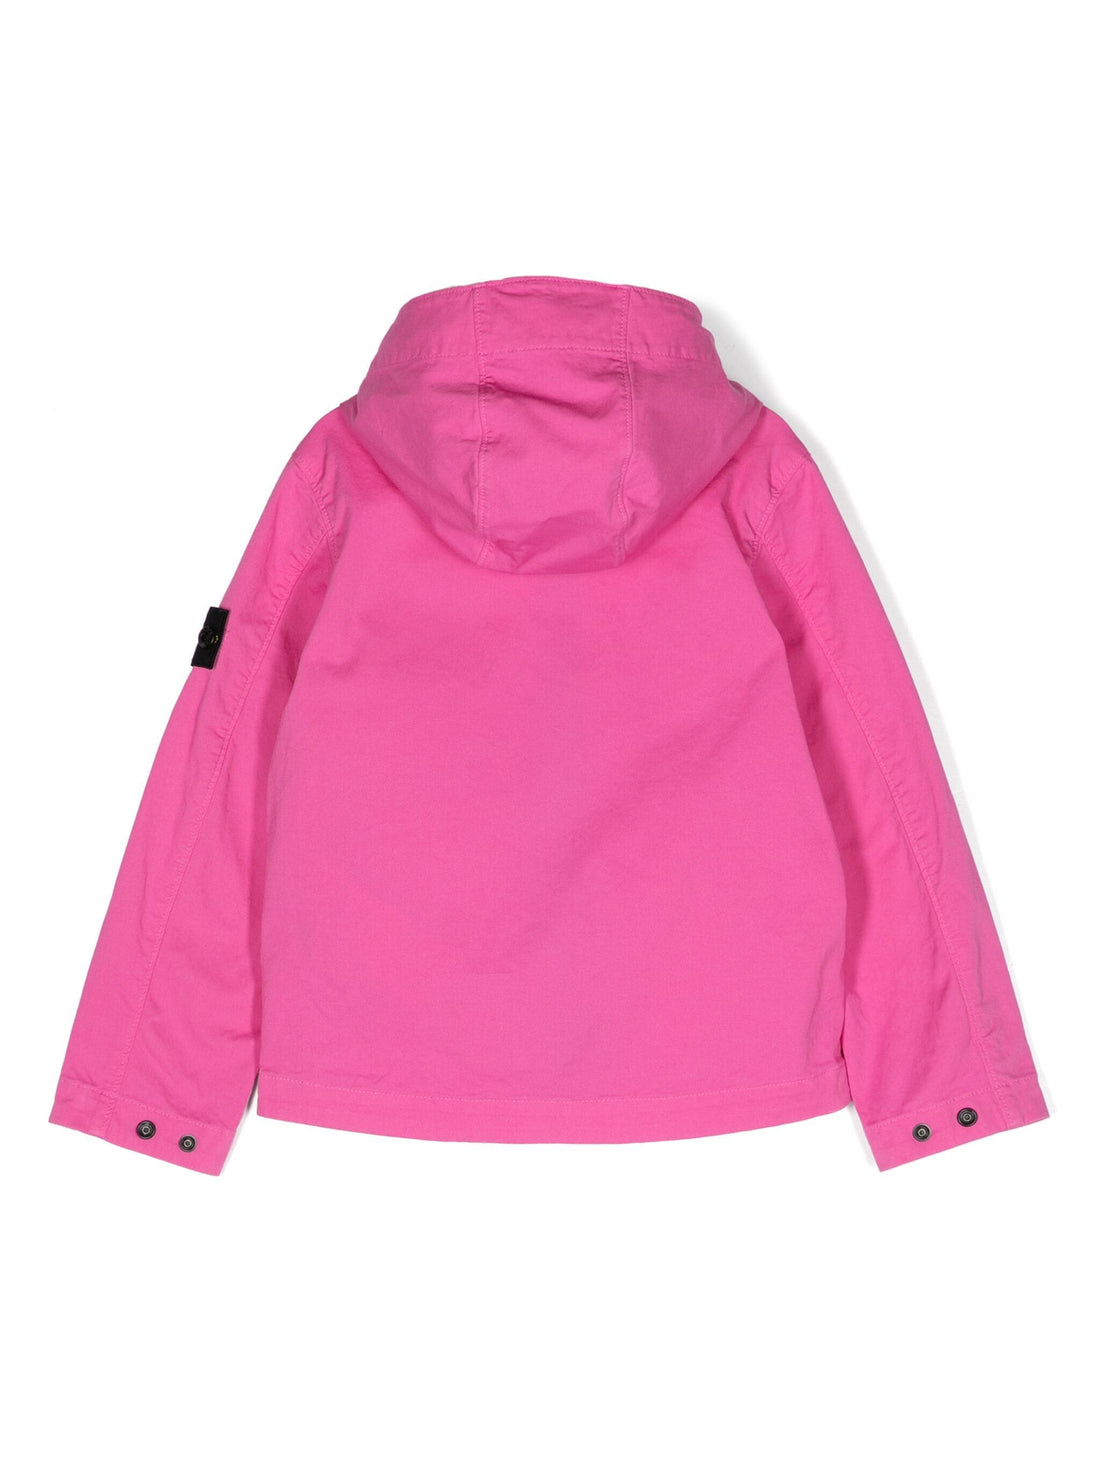 STONE ISLAND KIDS Zip-Up Hooded Twill Jacket Pink - MAISONDEFASHION.COM